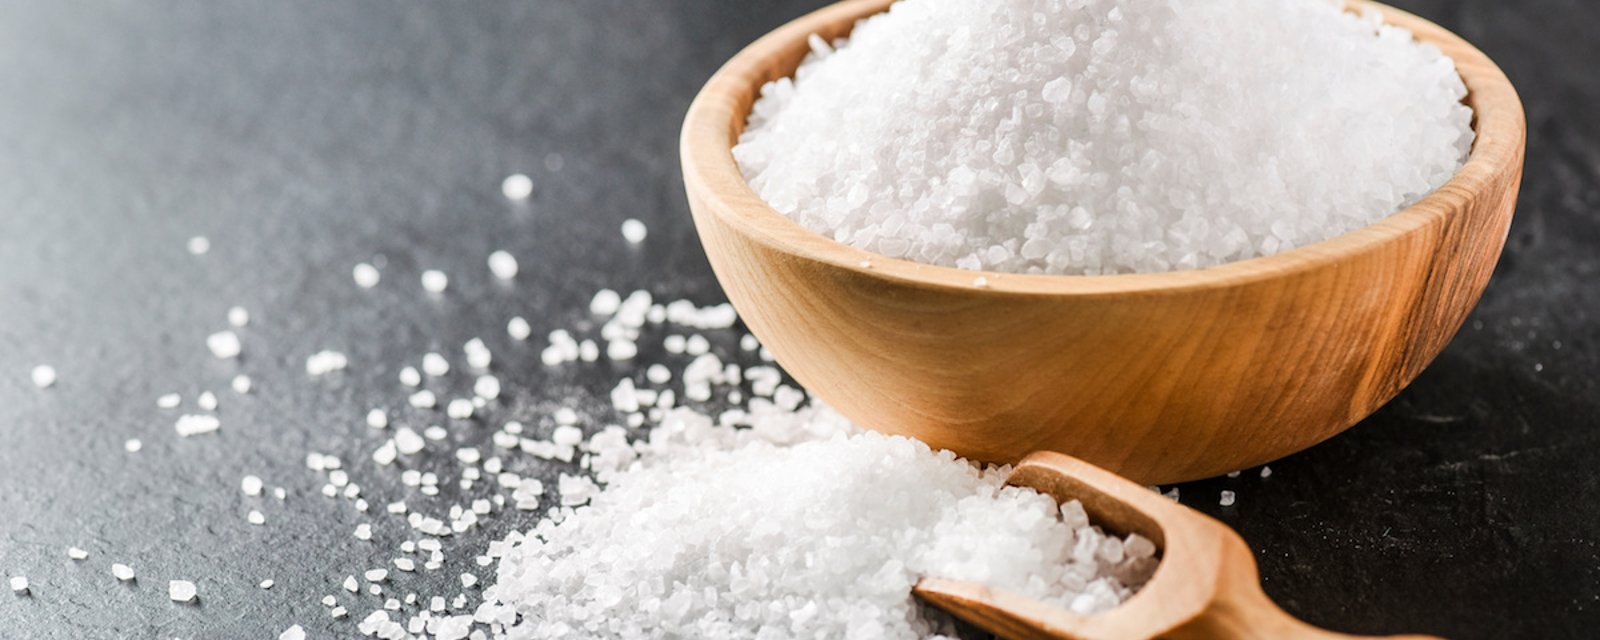 8 façons d'utiliser le sel pour entretenir la maison